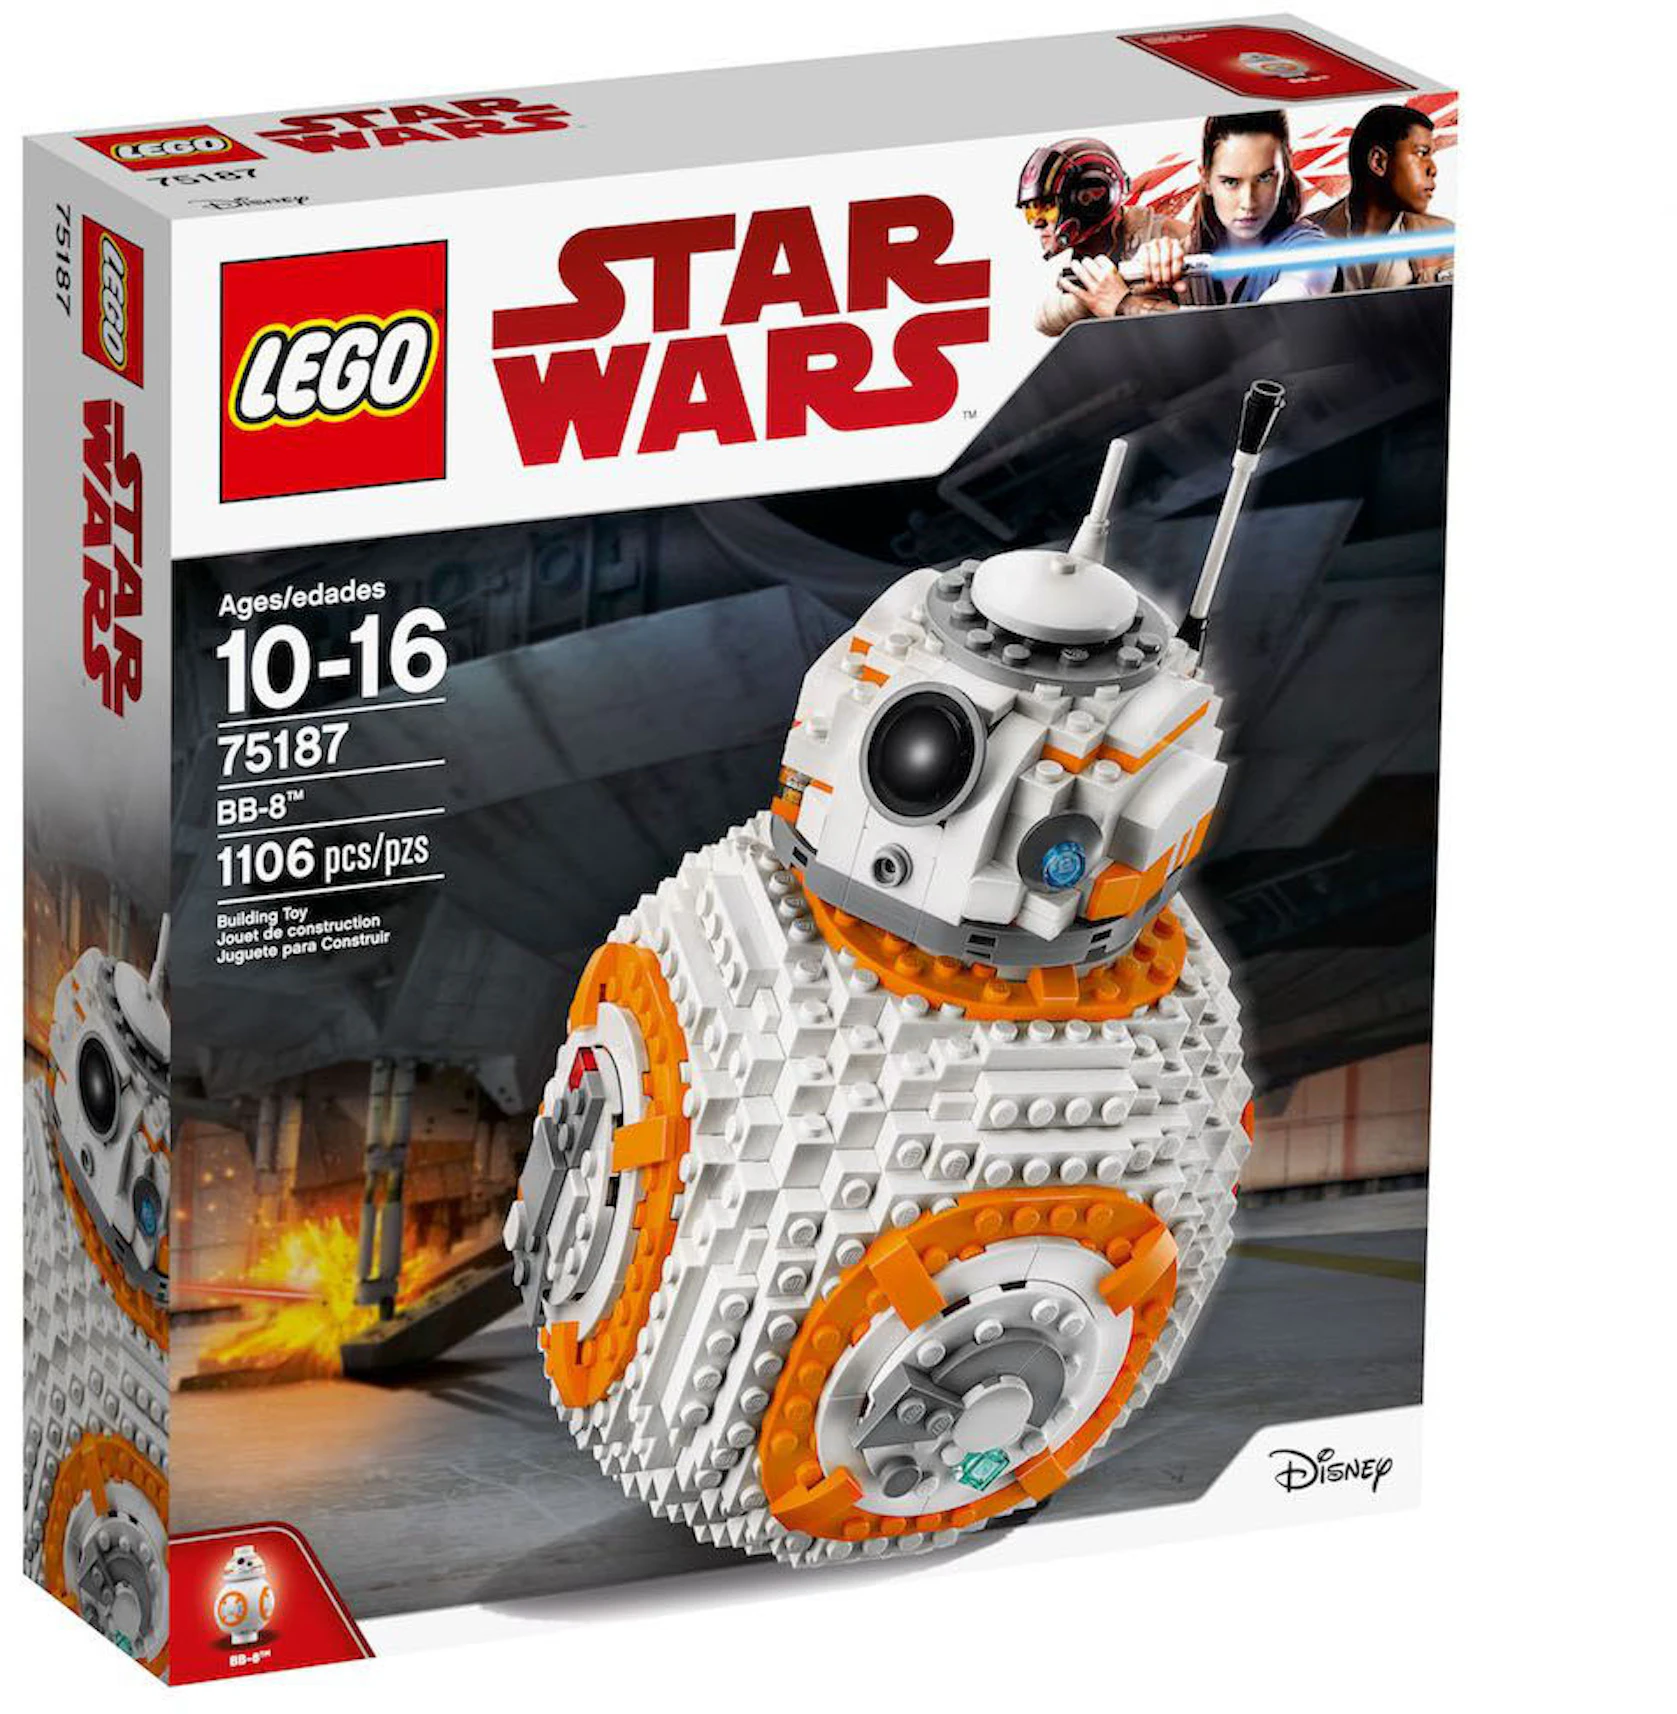 Stof Verbinding Nieuw maanjaar LEGO Star Wars - Buy & Sell Collectibles.